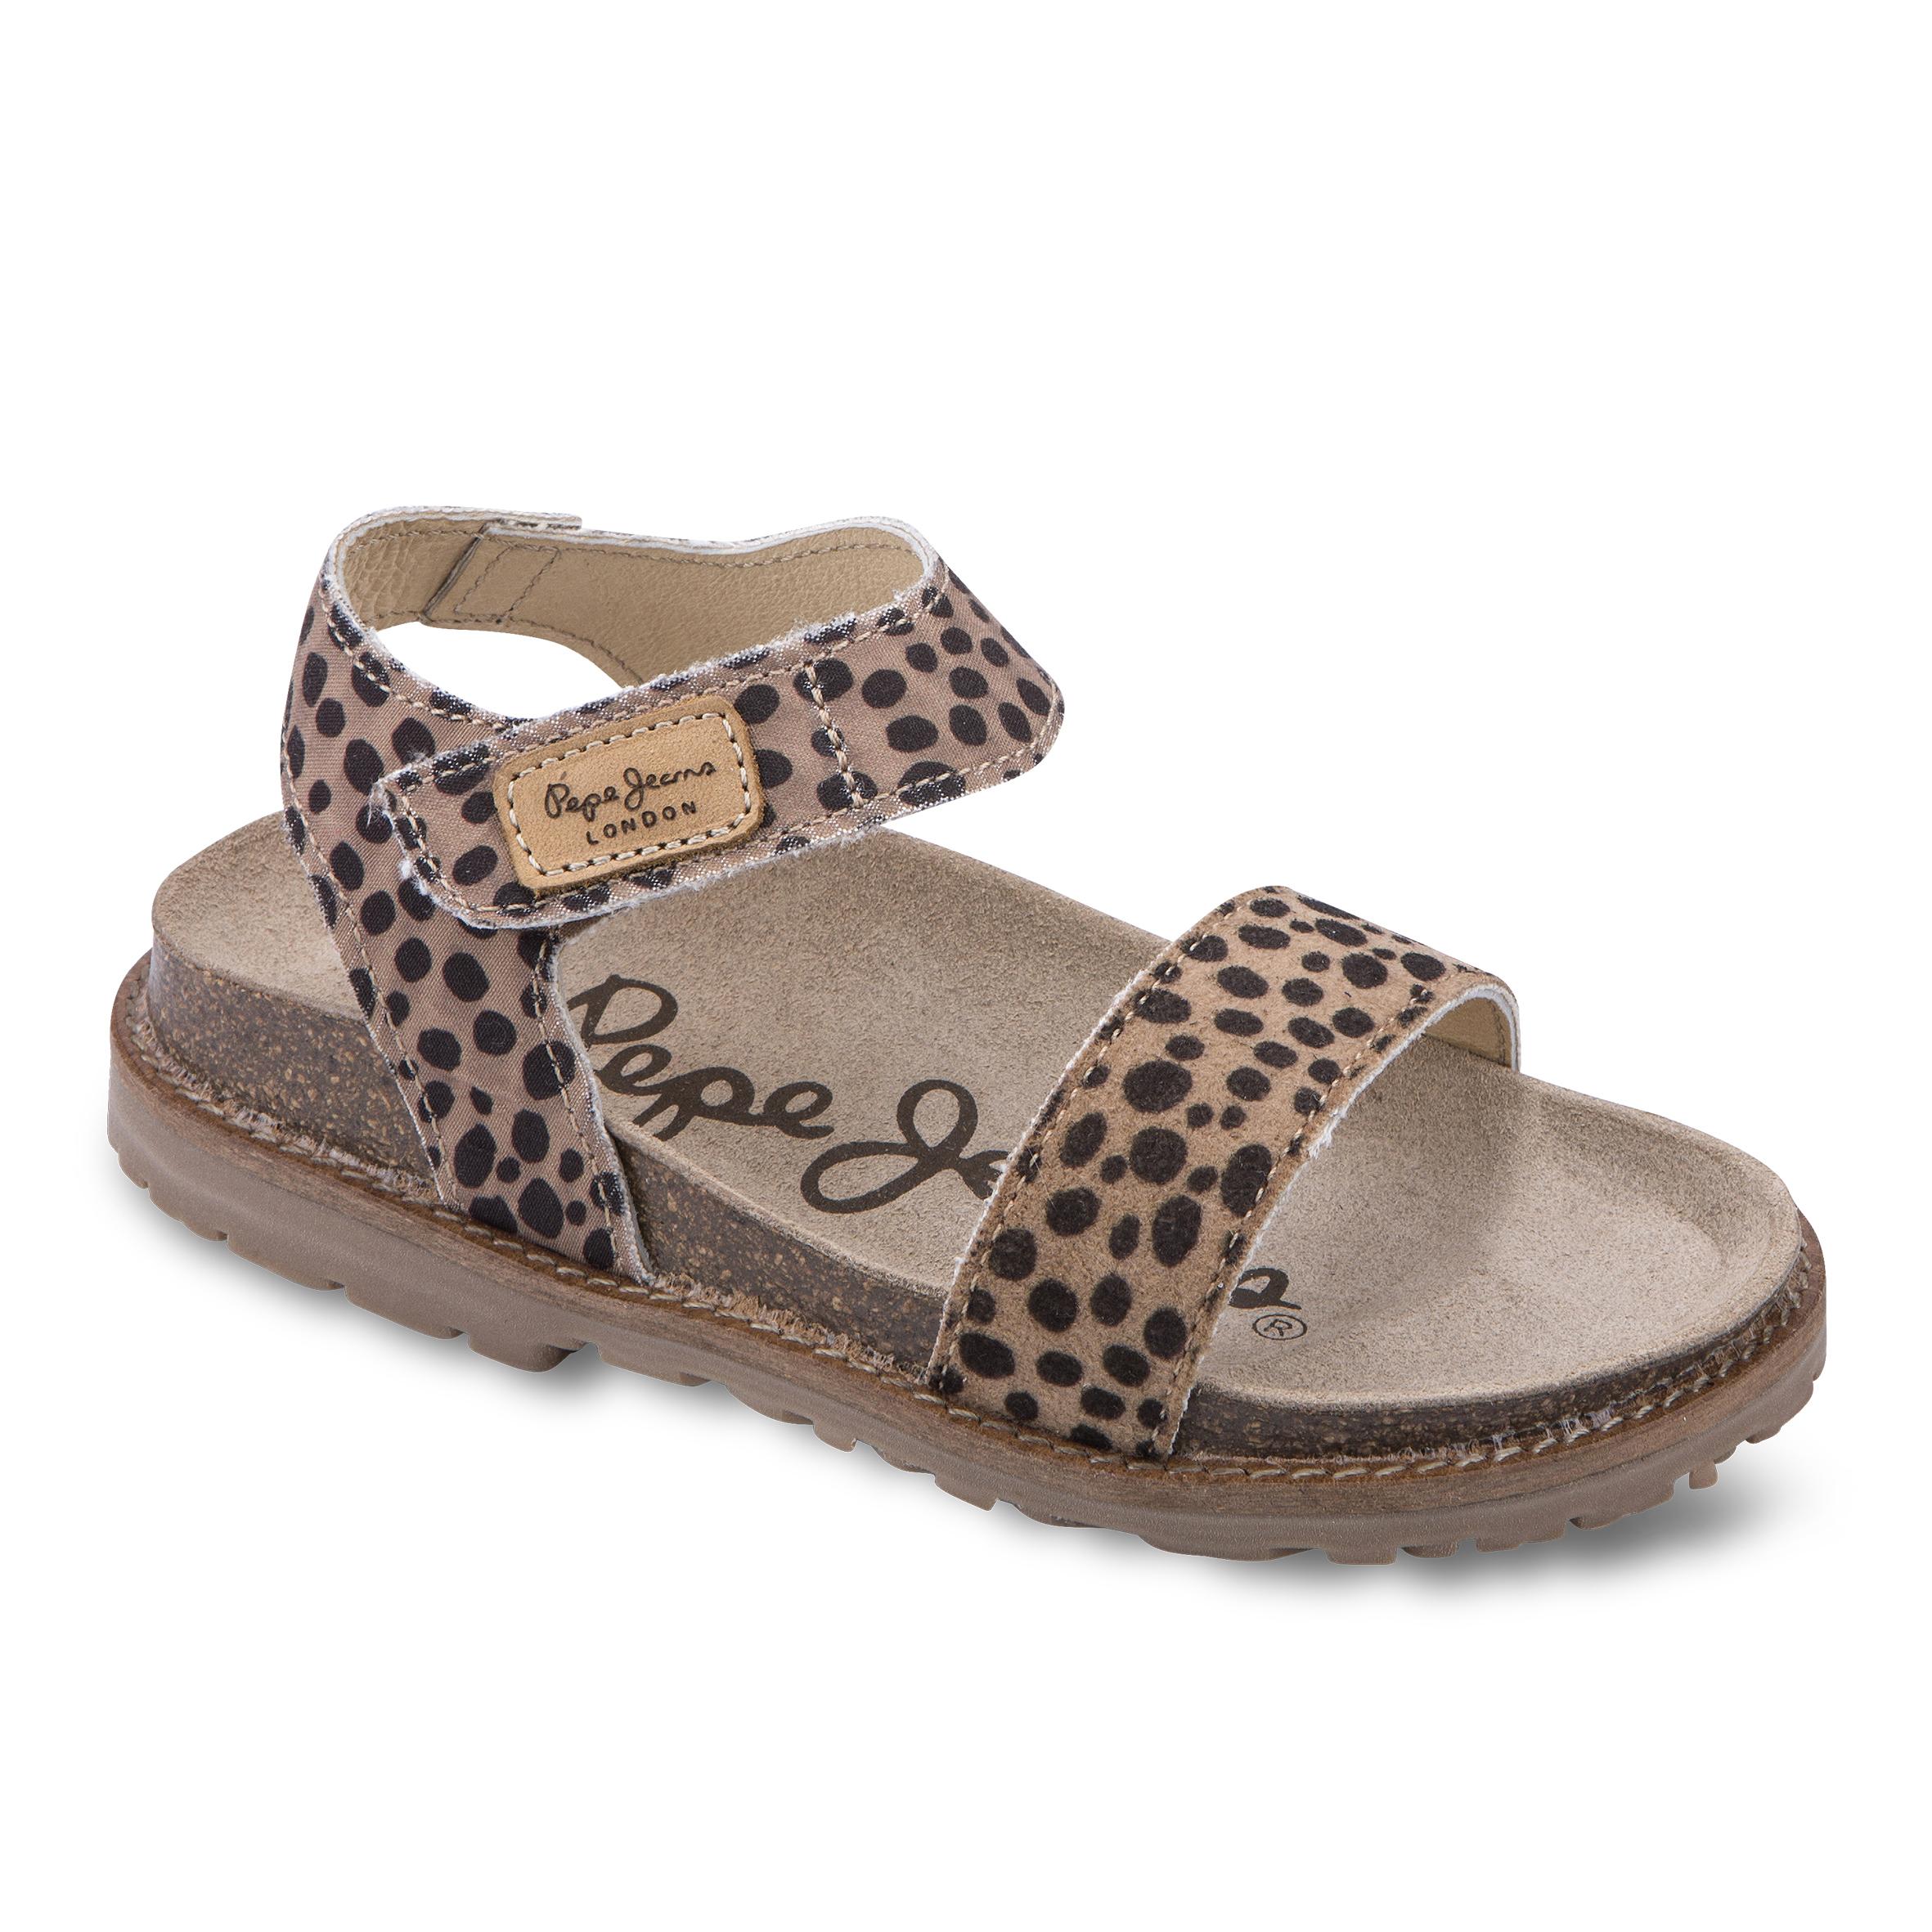 Sandales à imprimé léopard- Pepe Jeans - 55€